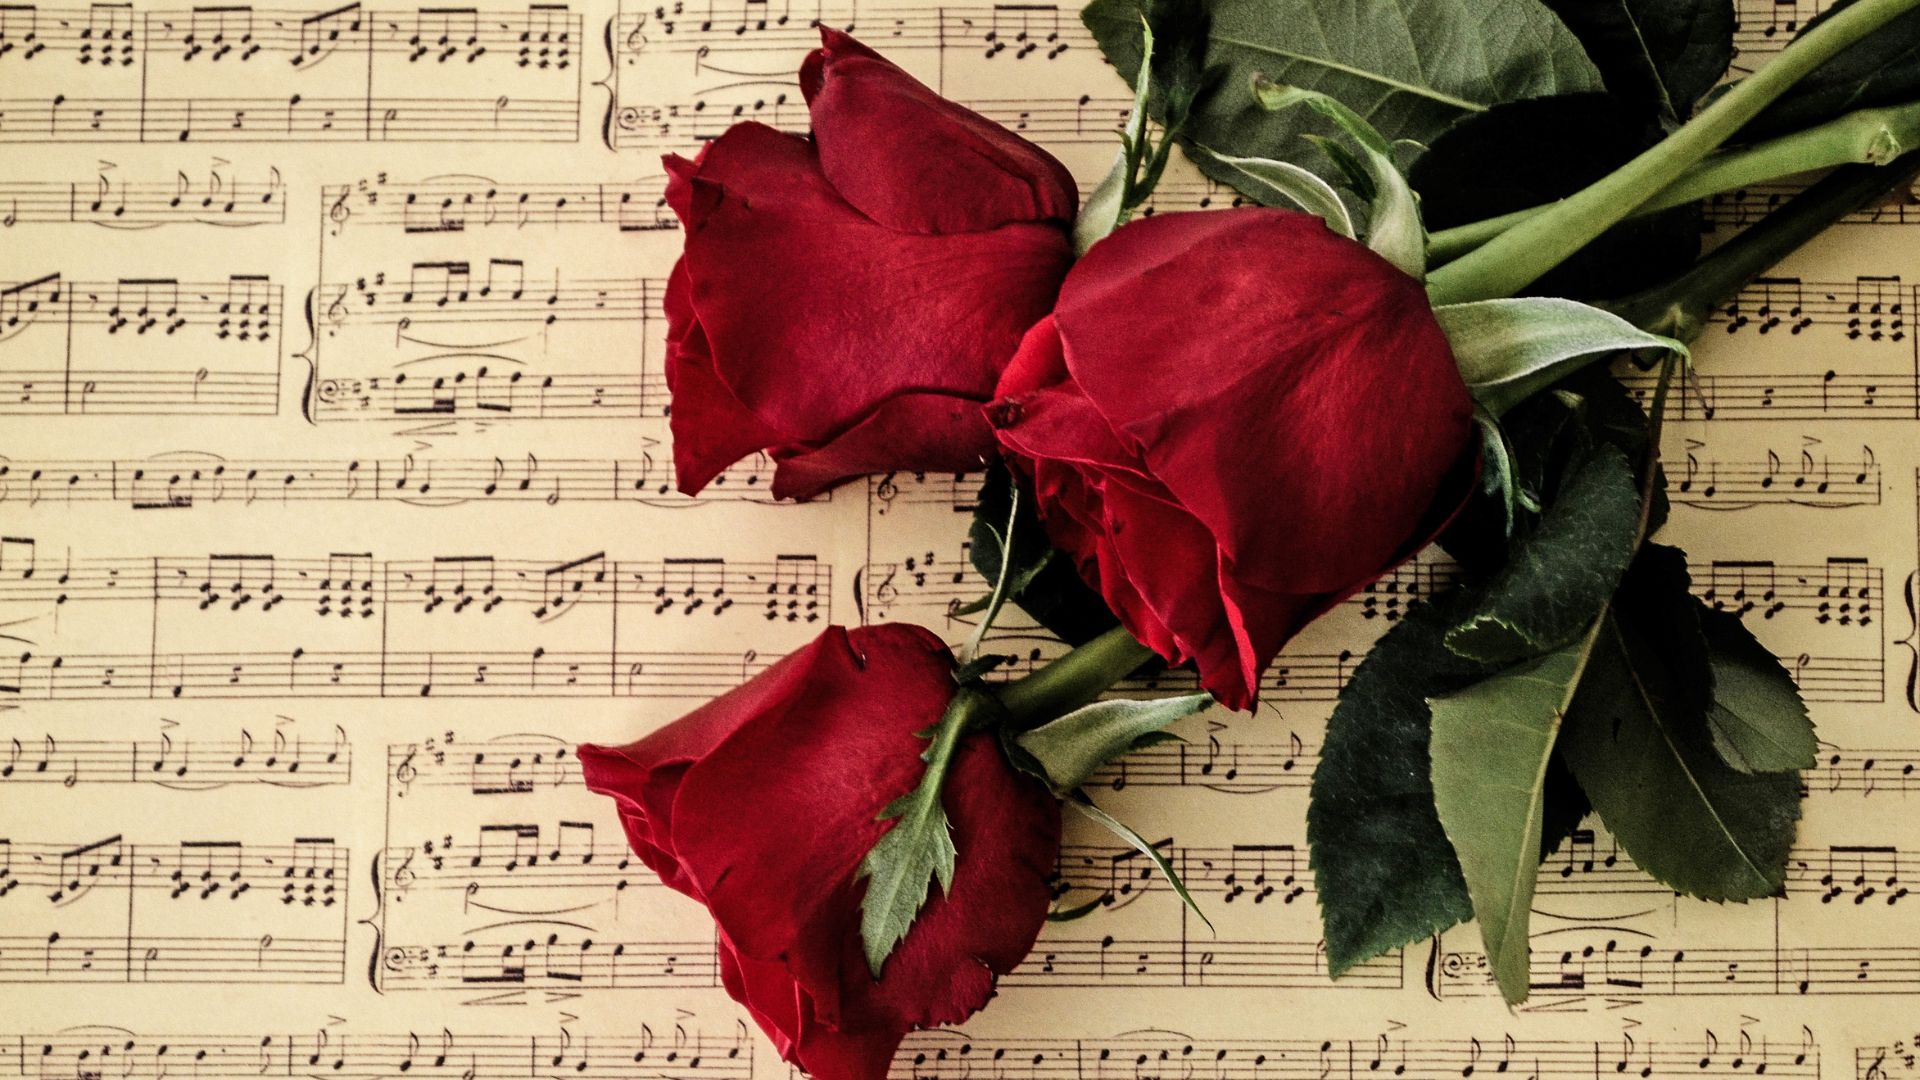 Imagem de três rosas vermelhas em cima de um caderno de partituras musicais